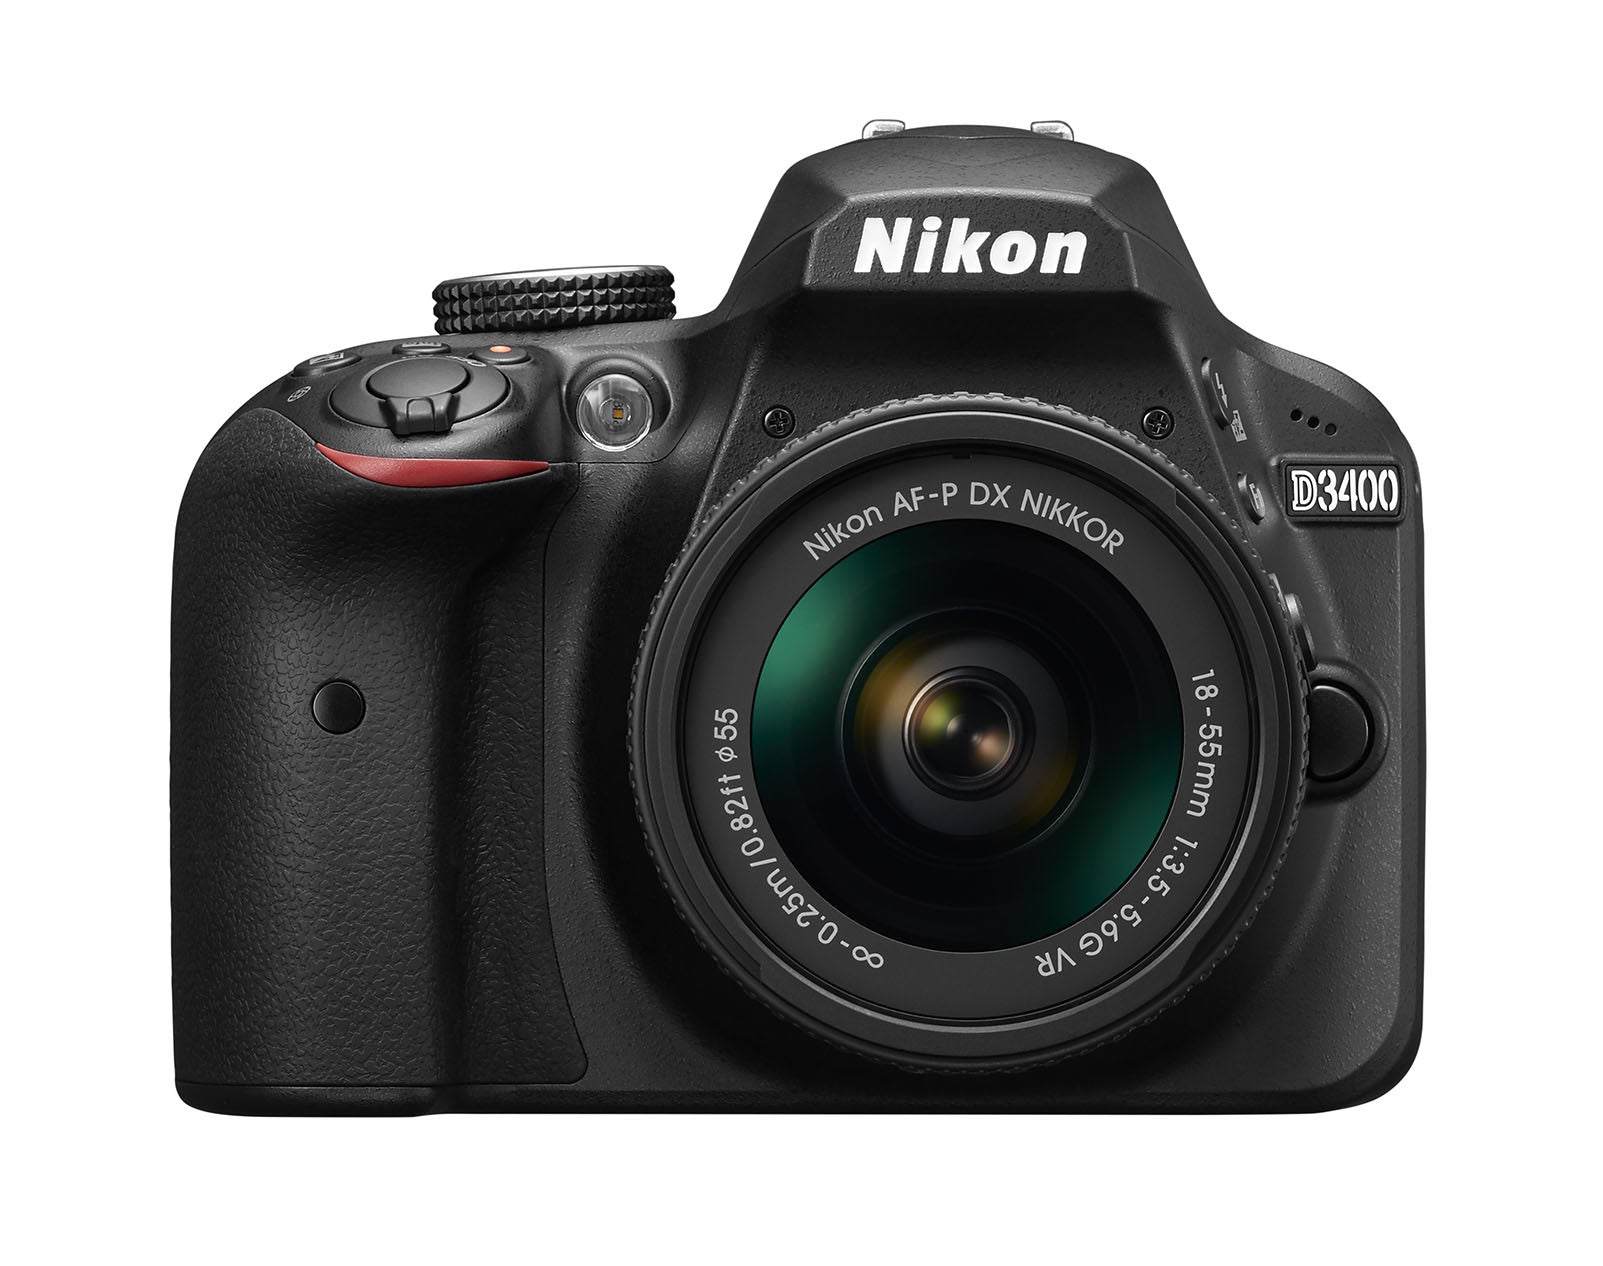 Nikon D3400 DX-format Digital SLR Kit w/ 18-55mm DX G VR Zoom Lens Black, camera dslr cameras, Nikon - Pictureline  - 1